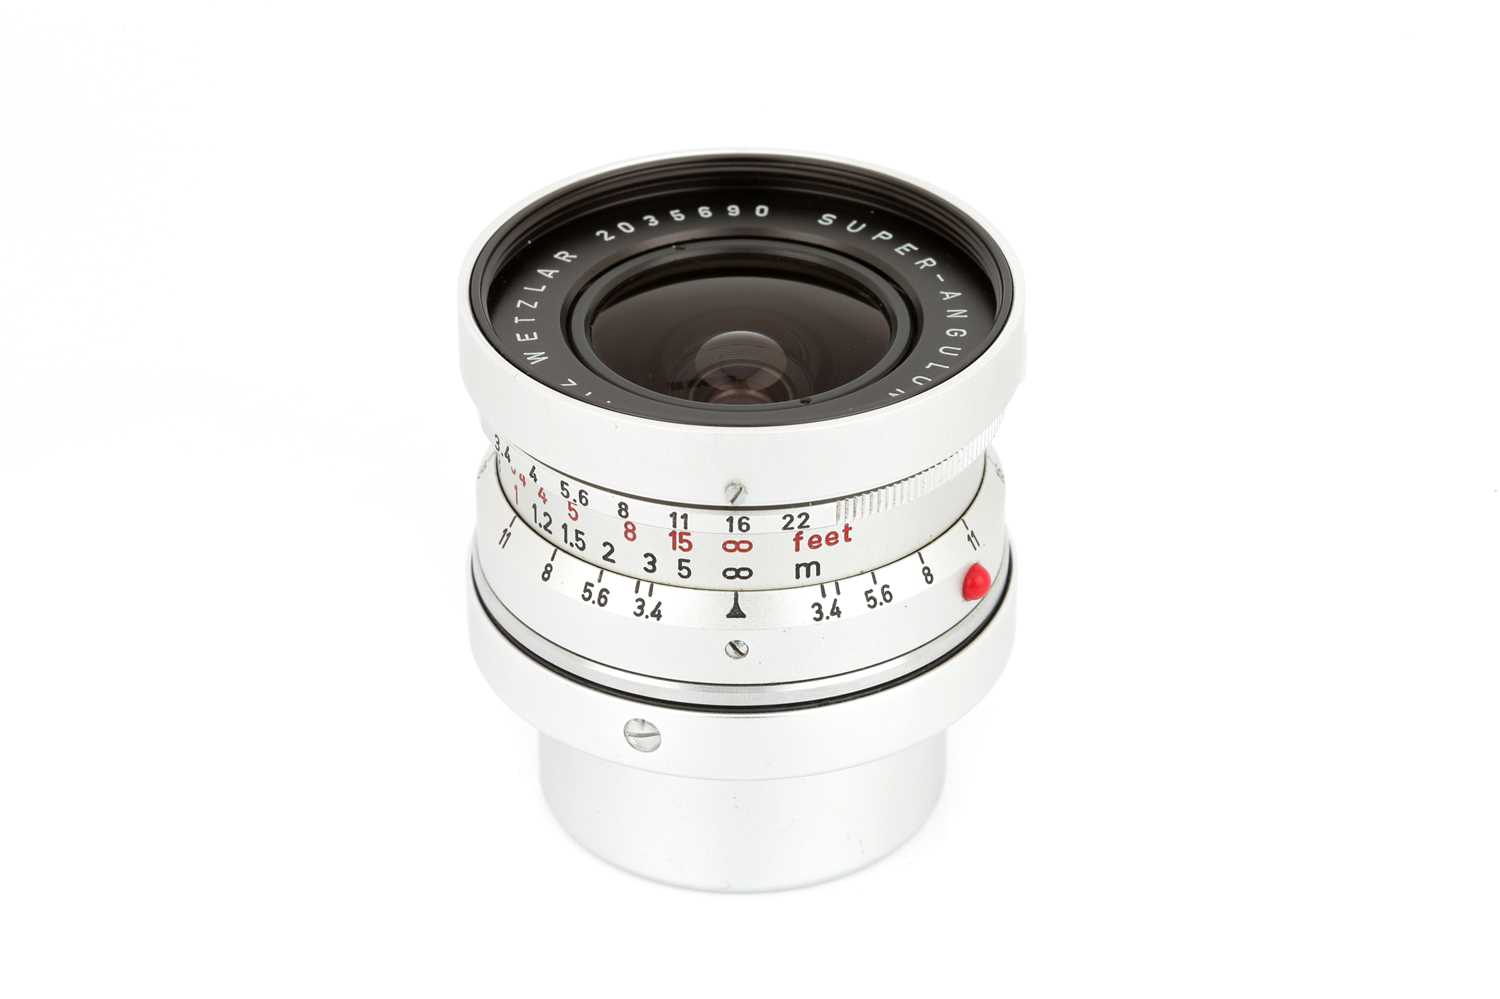 Lot 42 - A Leitz Super-Angulon f/3.4 21mm Lens